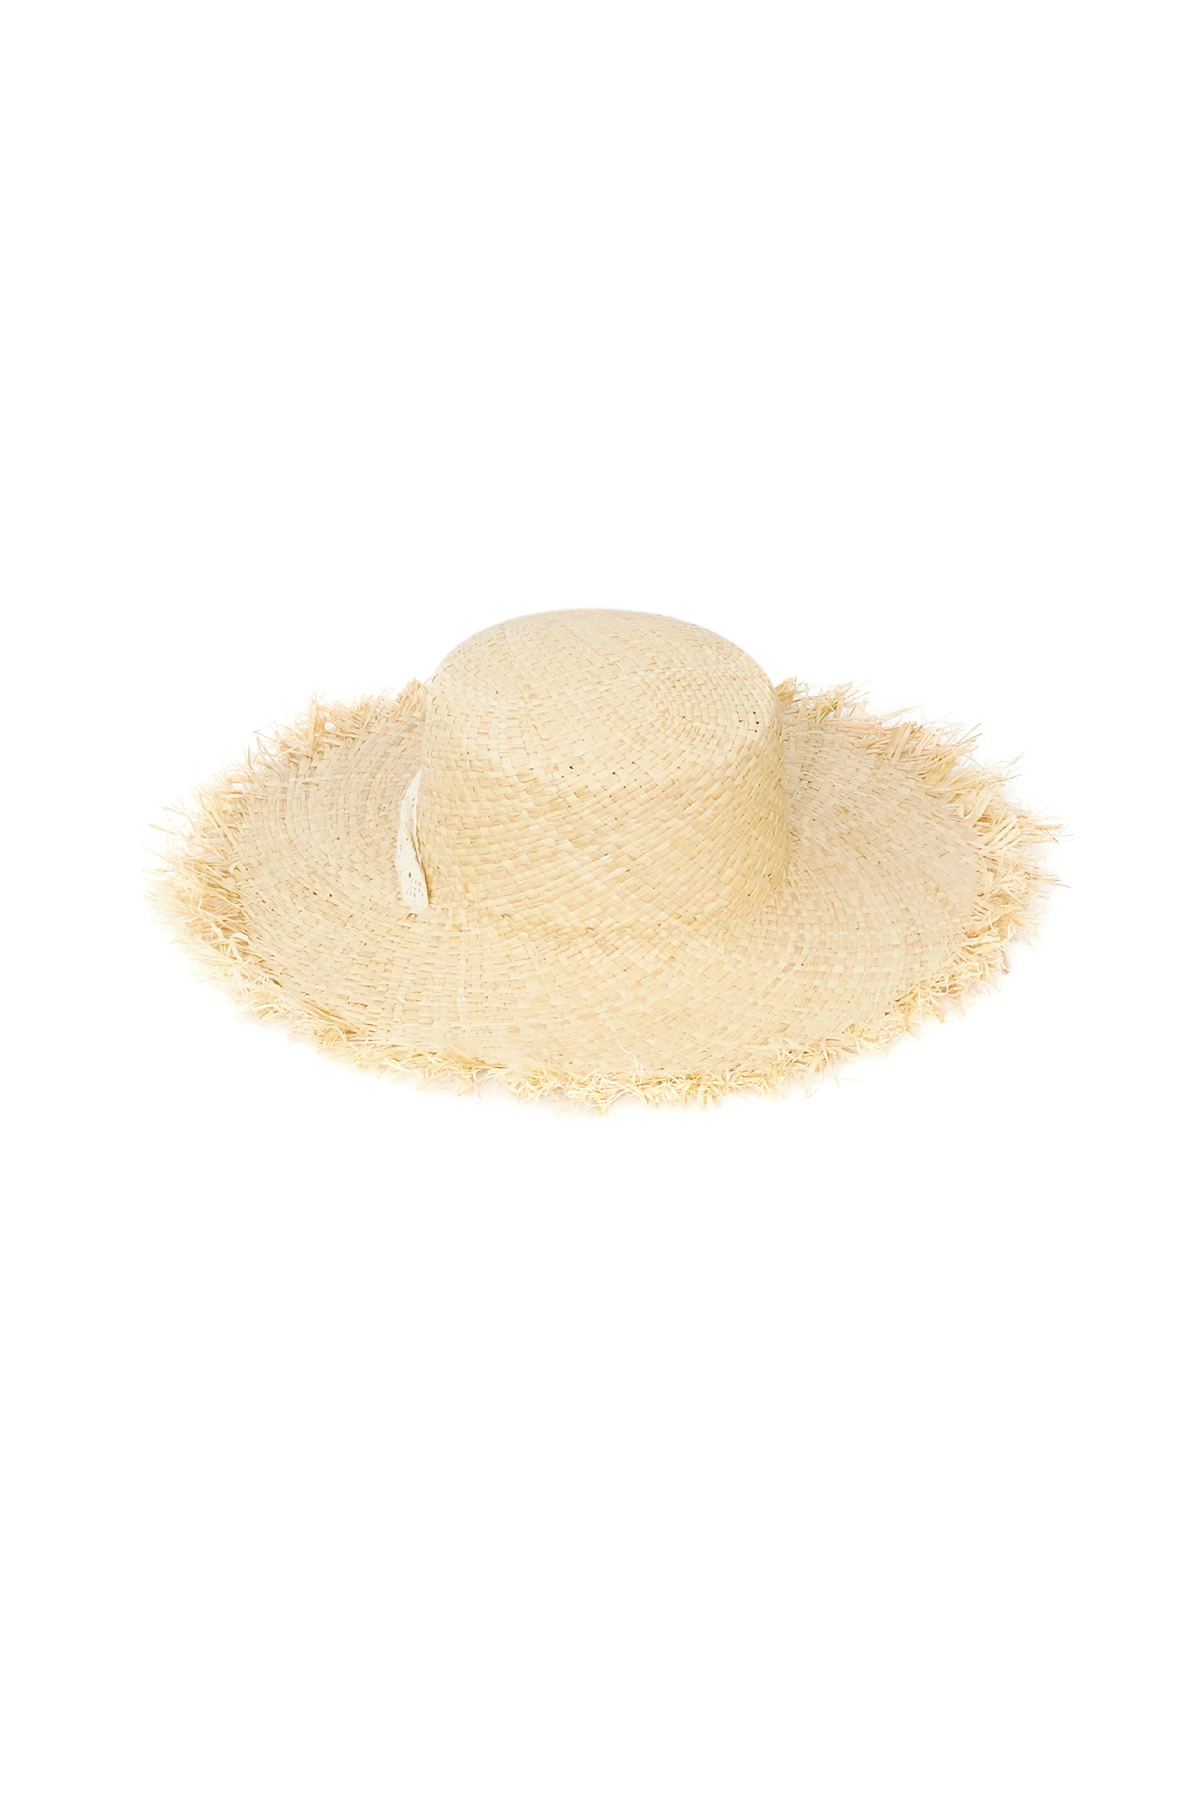 Plaj havası şapkası - kirli beyaz Resim5